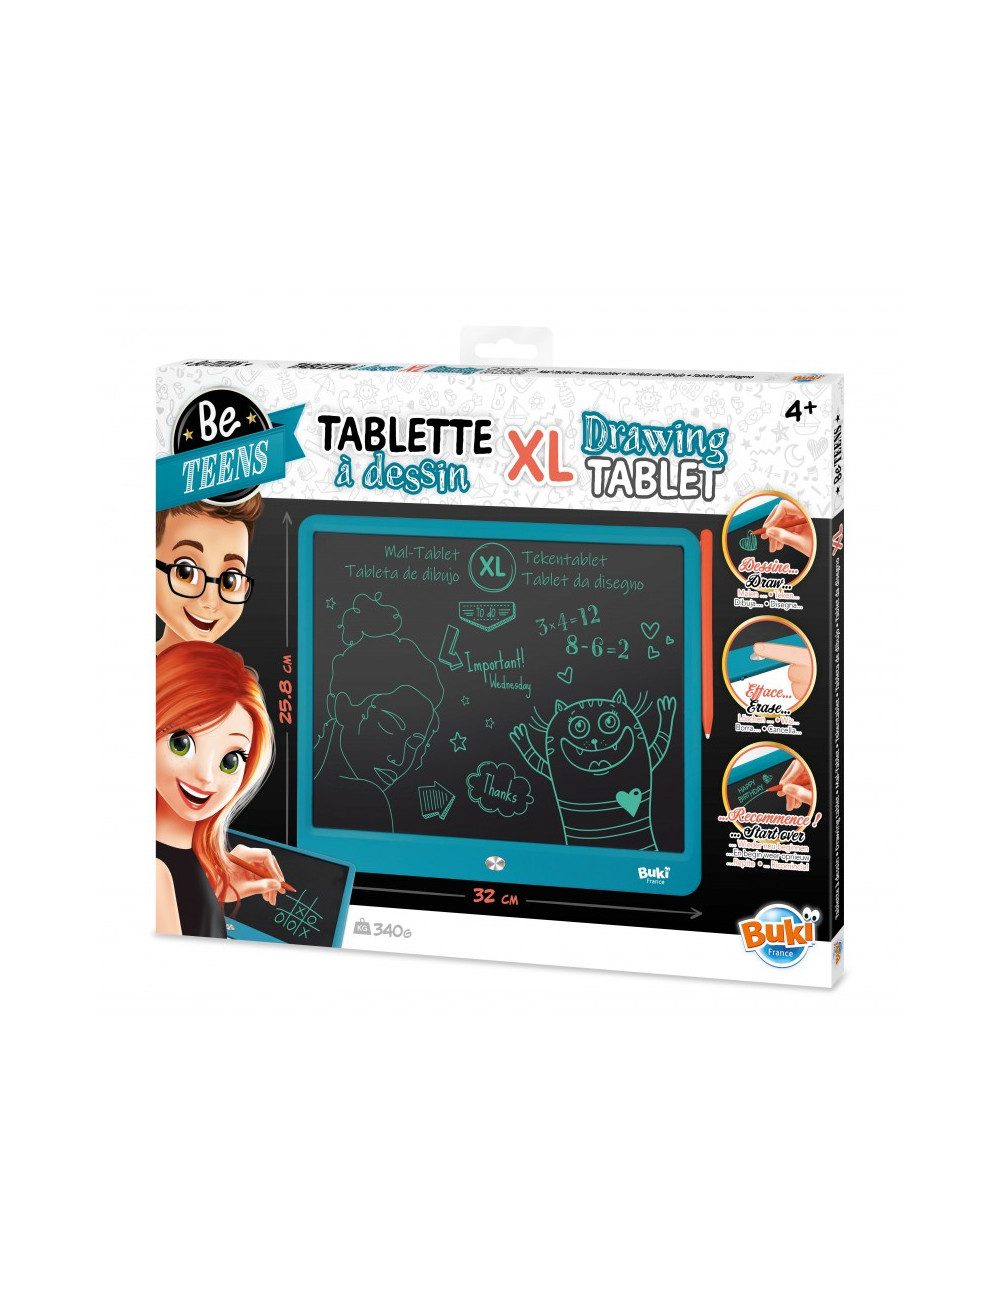 Acheter la Tablette à dessins XL de chez Buki France - Ardoise magique  Tropfastoche.com